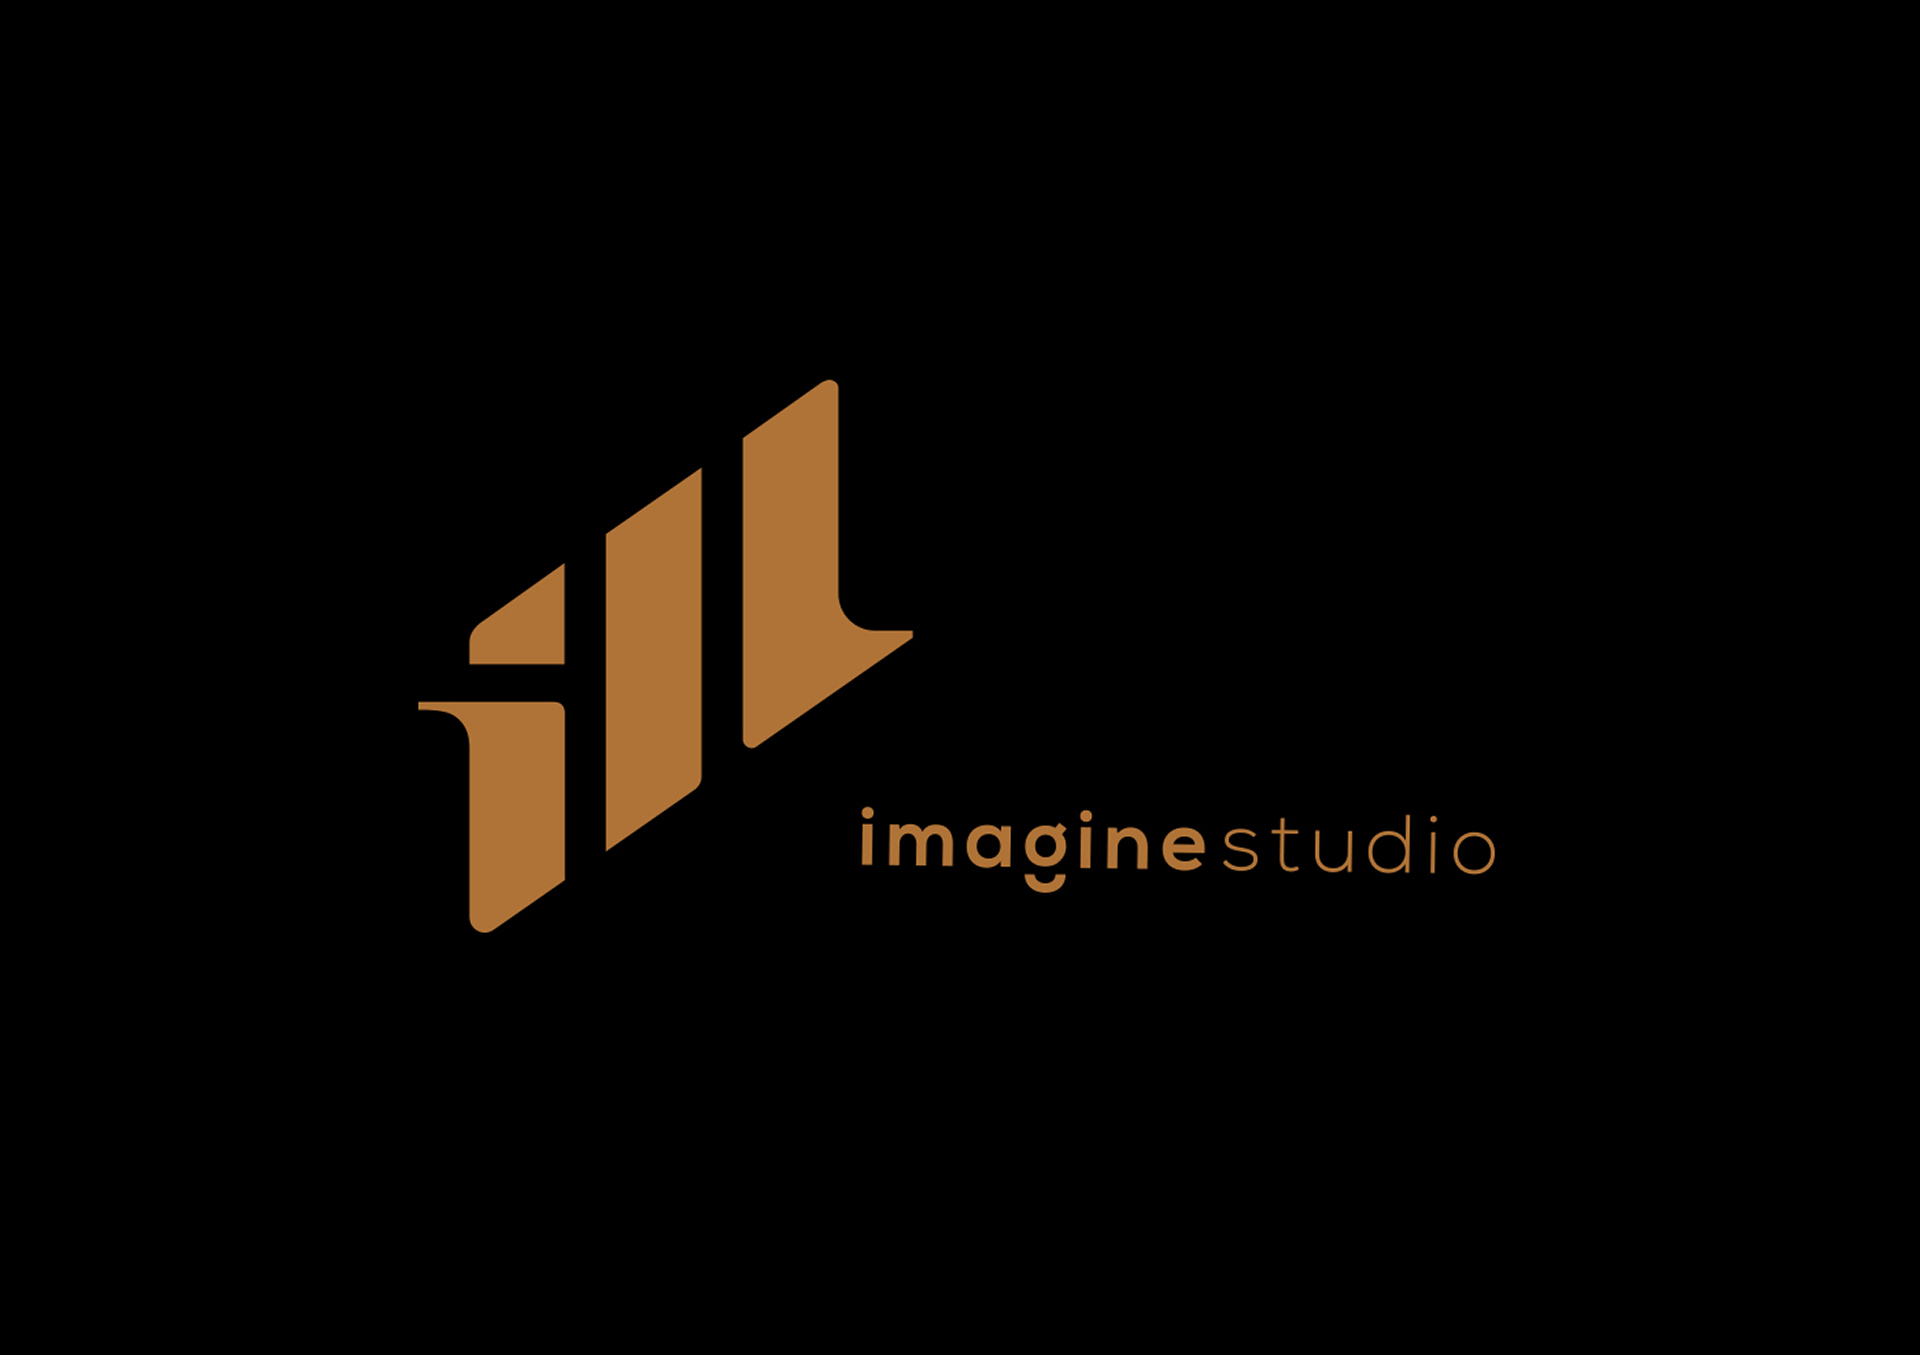 imagine studio